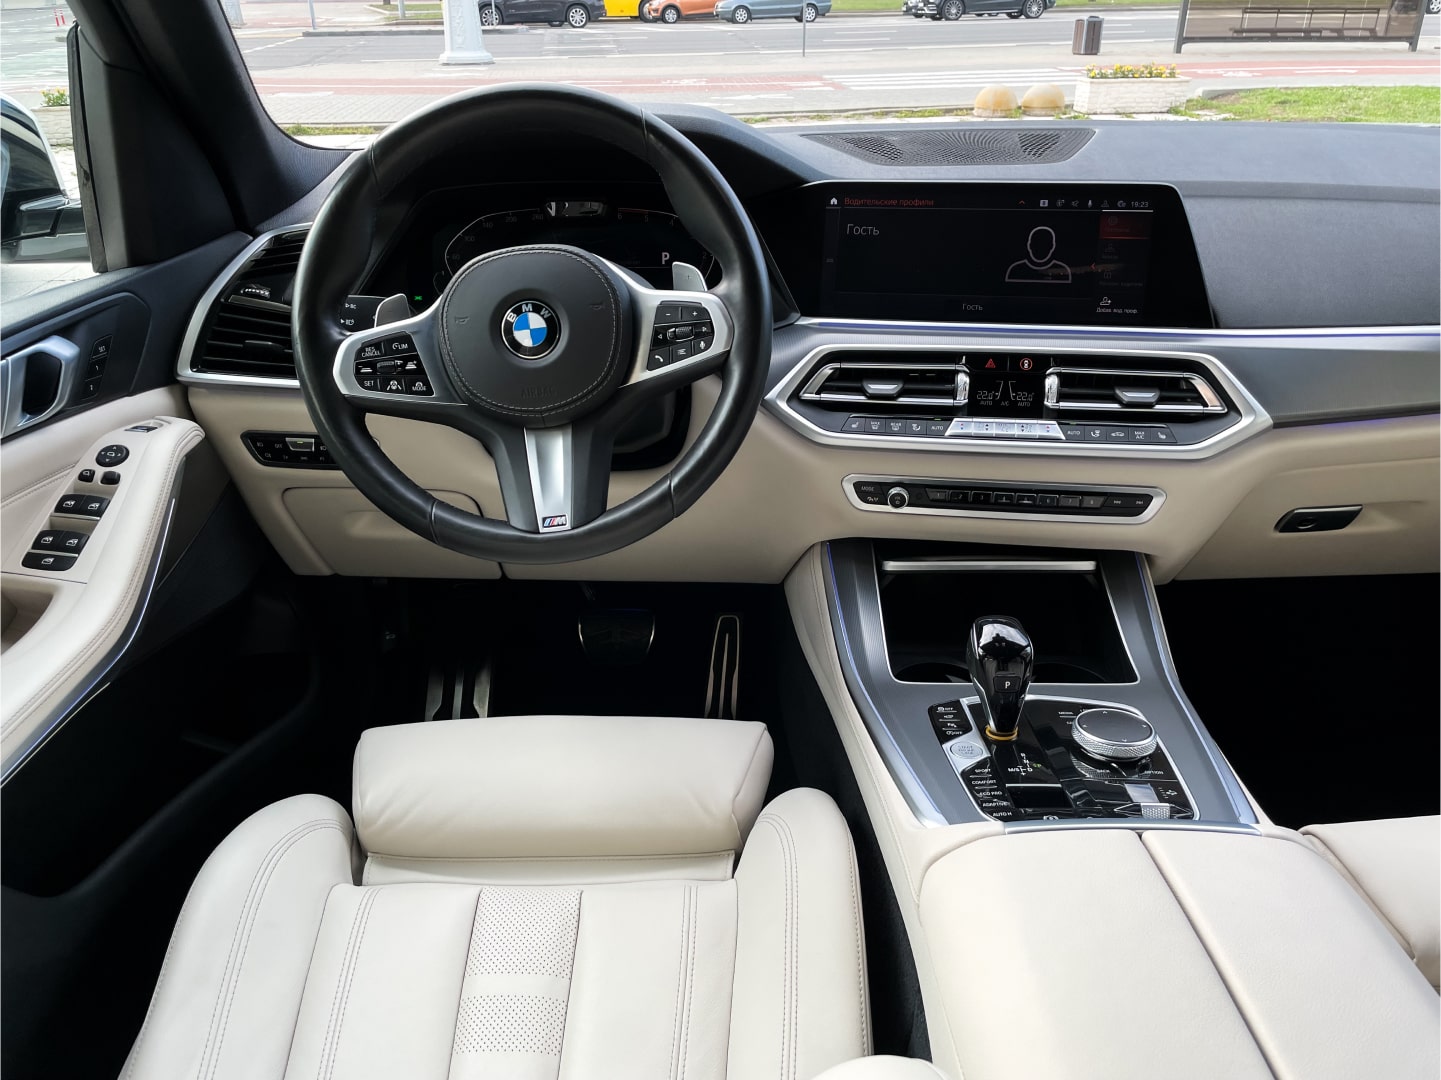 Аренда  BMW X5 G05 xDrive 30d AT M Sport  6 класса 2020 года в городе Минск от 254 $/сутки,  двигатель: ДТ , объем 3.0 литров, КАСКО (Мультидрайв), без водителя, вид 3 - West Group